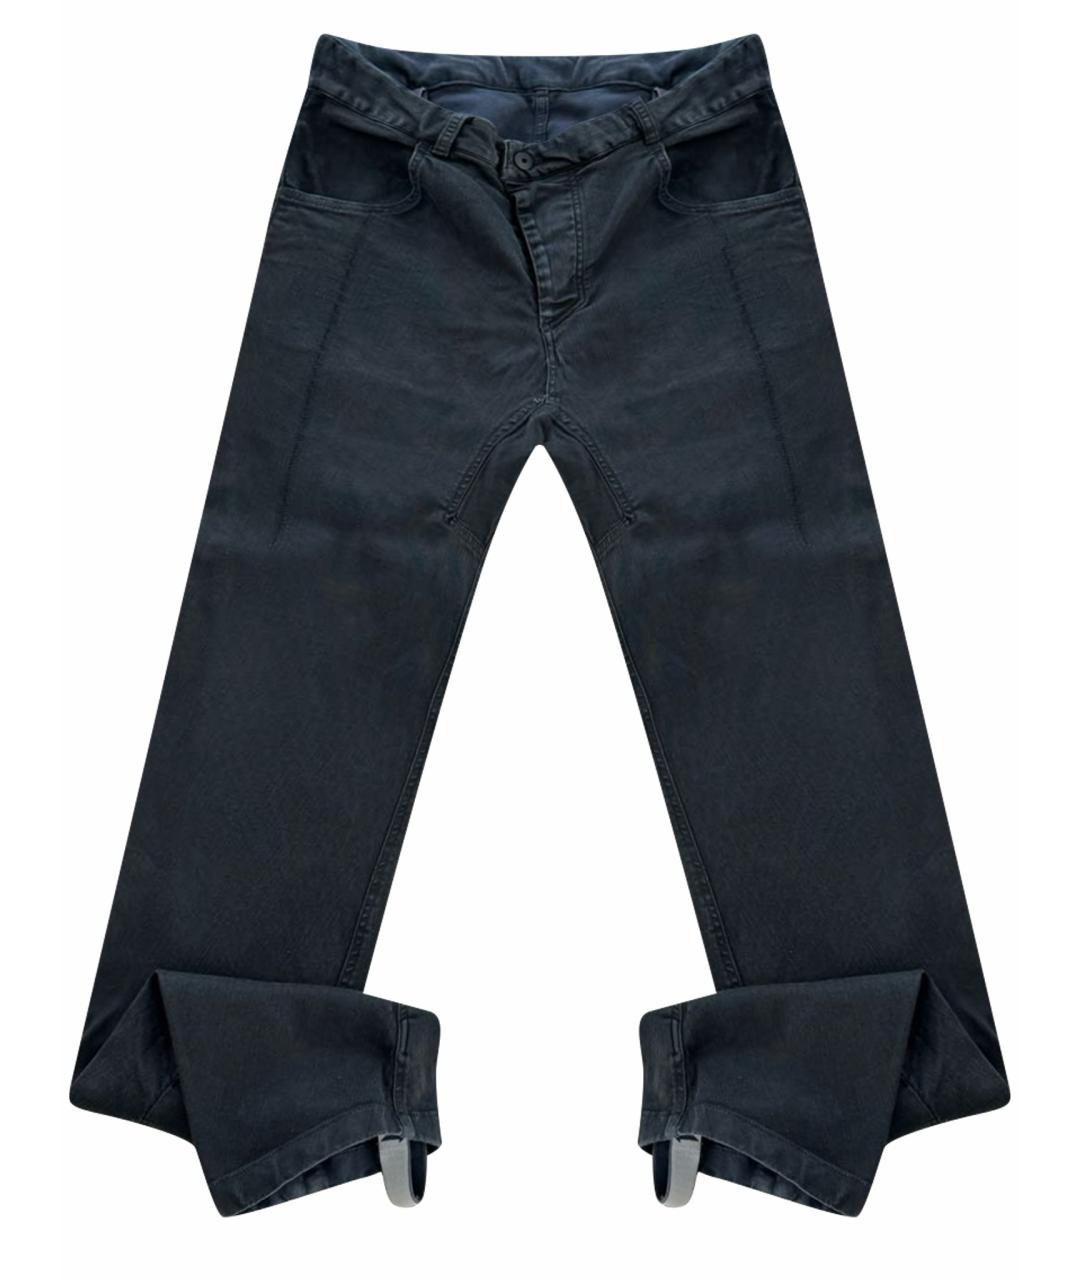 11 BY BORIS BIDJAN SABERI Черные хлопковые джинсы скинни, фото 1